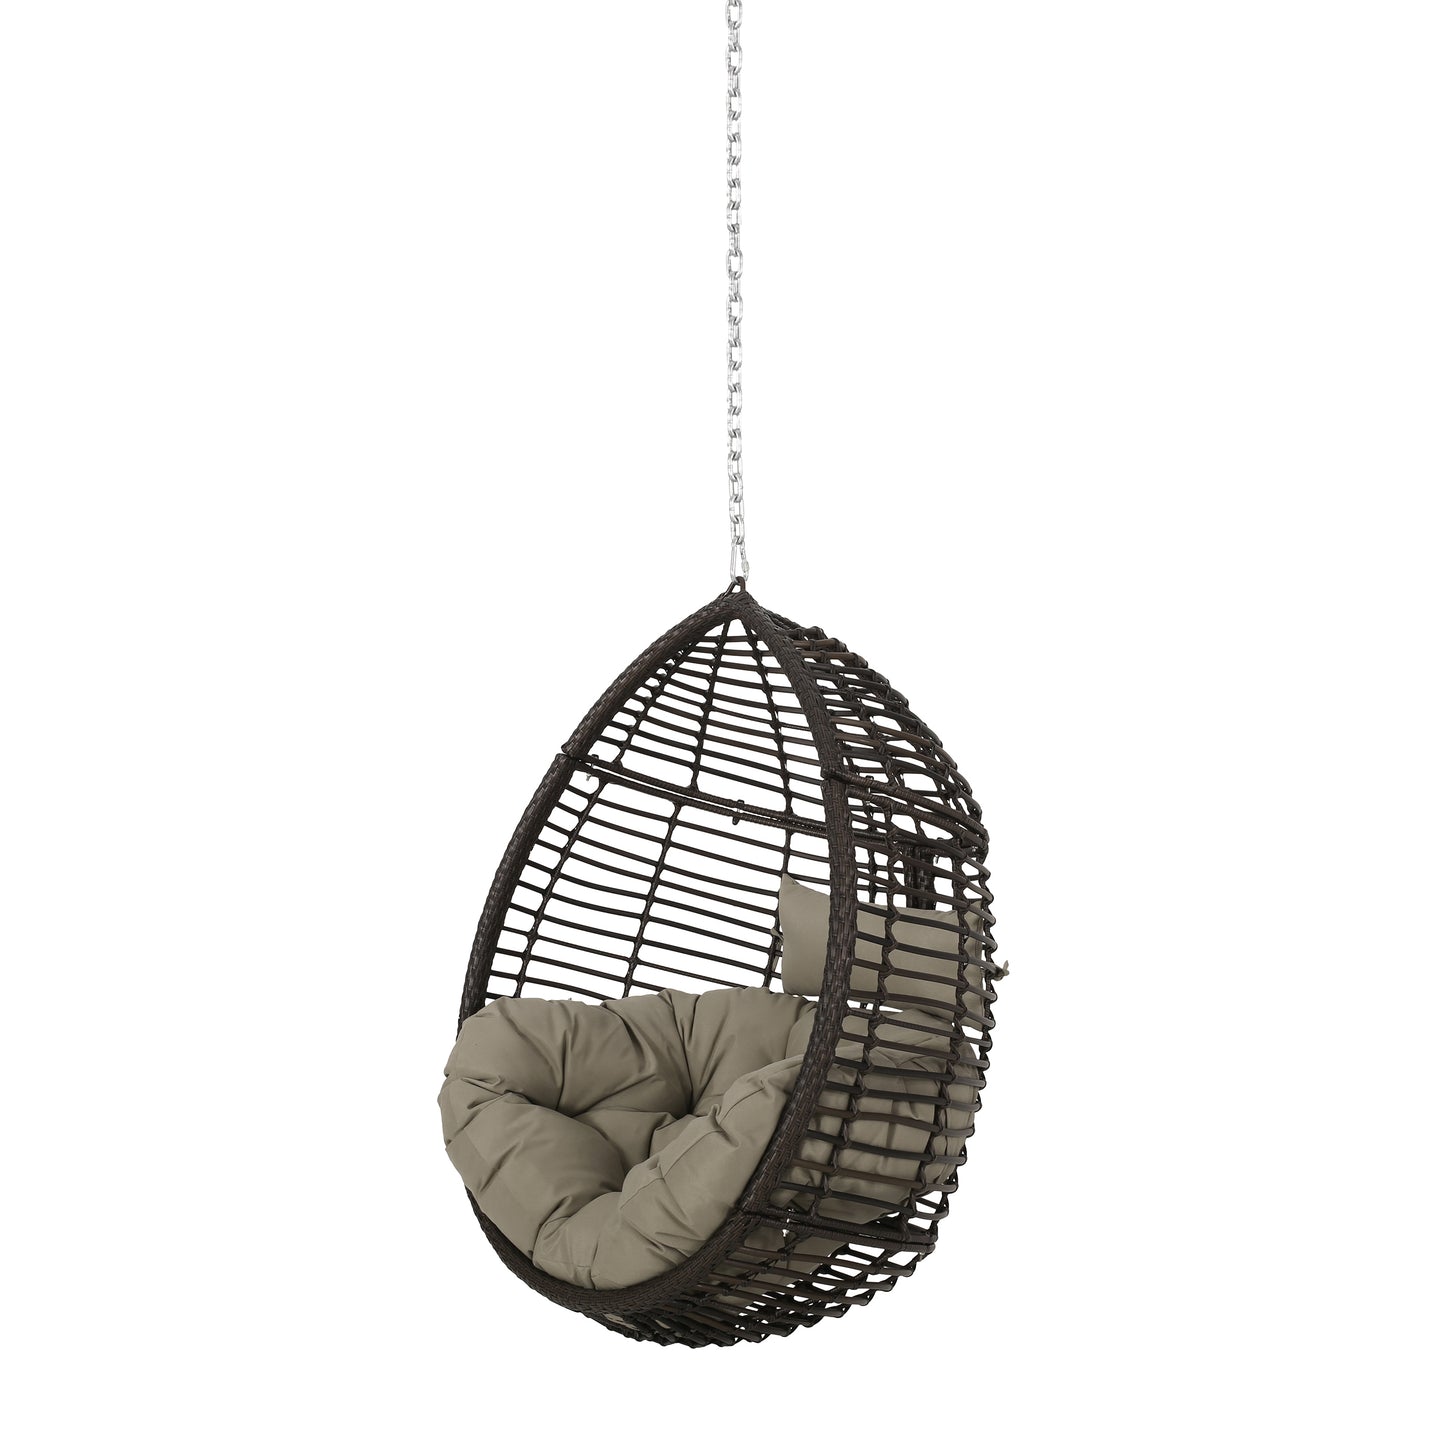 Hempstead Indoor/Outdoor Wicker Hanging Teardrop / Egg Chair (NO STAND)